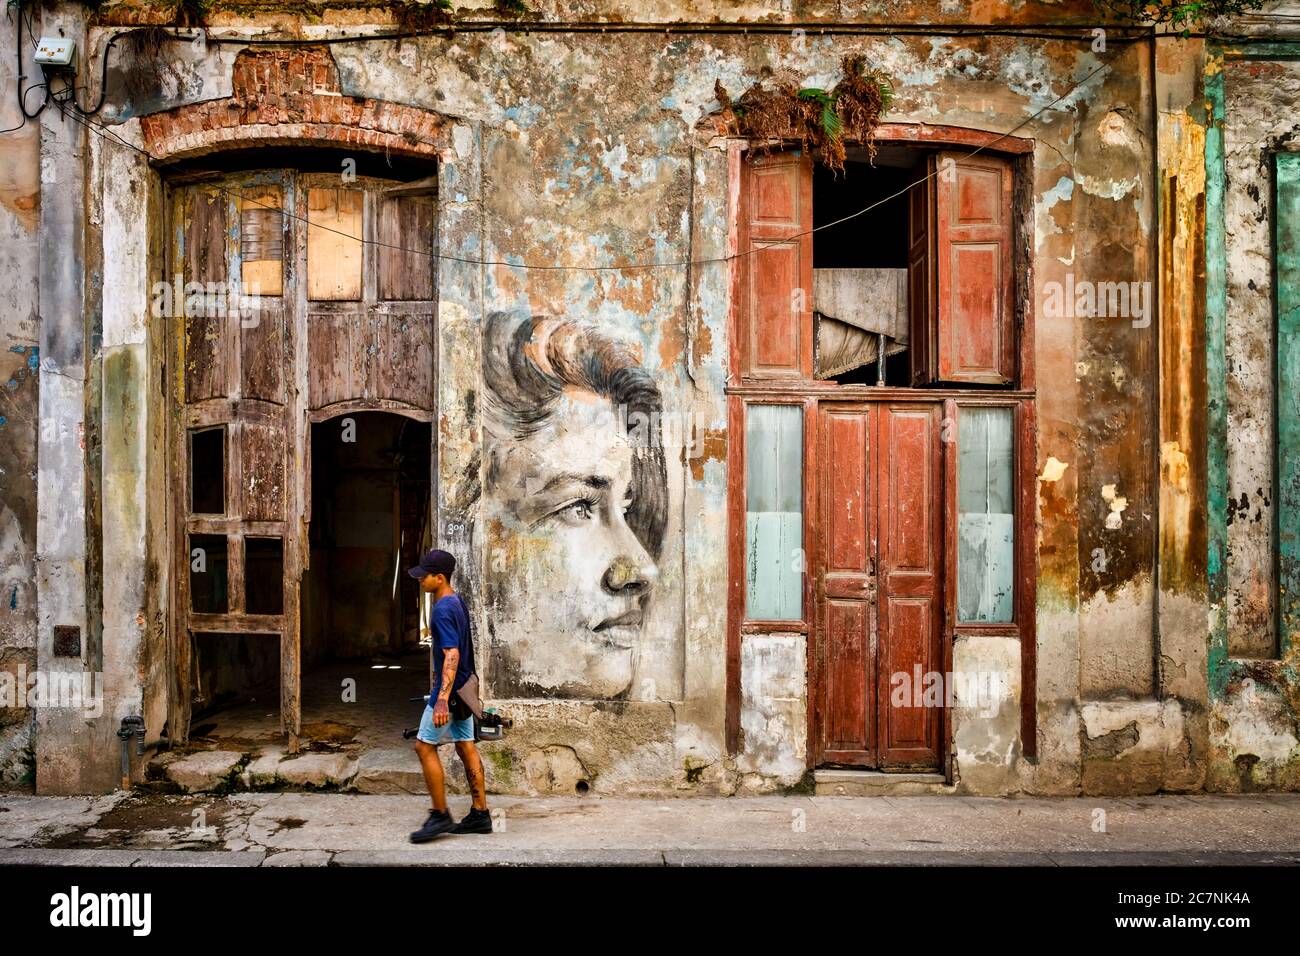 Städtischer Verfall in der Altstadt von Havanna. Straßenszene mit einem schönen Kolonialgebäude fast in Ruinen Stockfoto